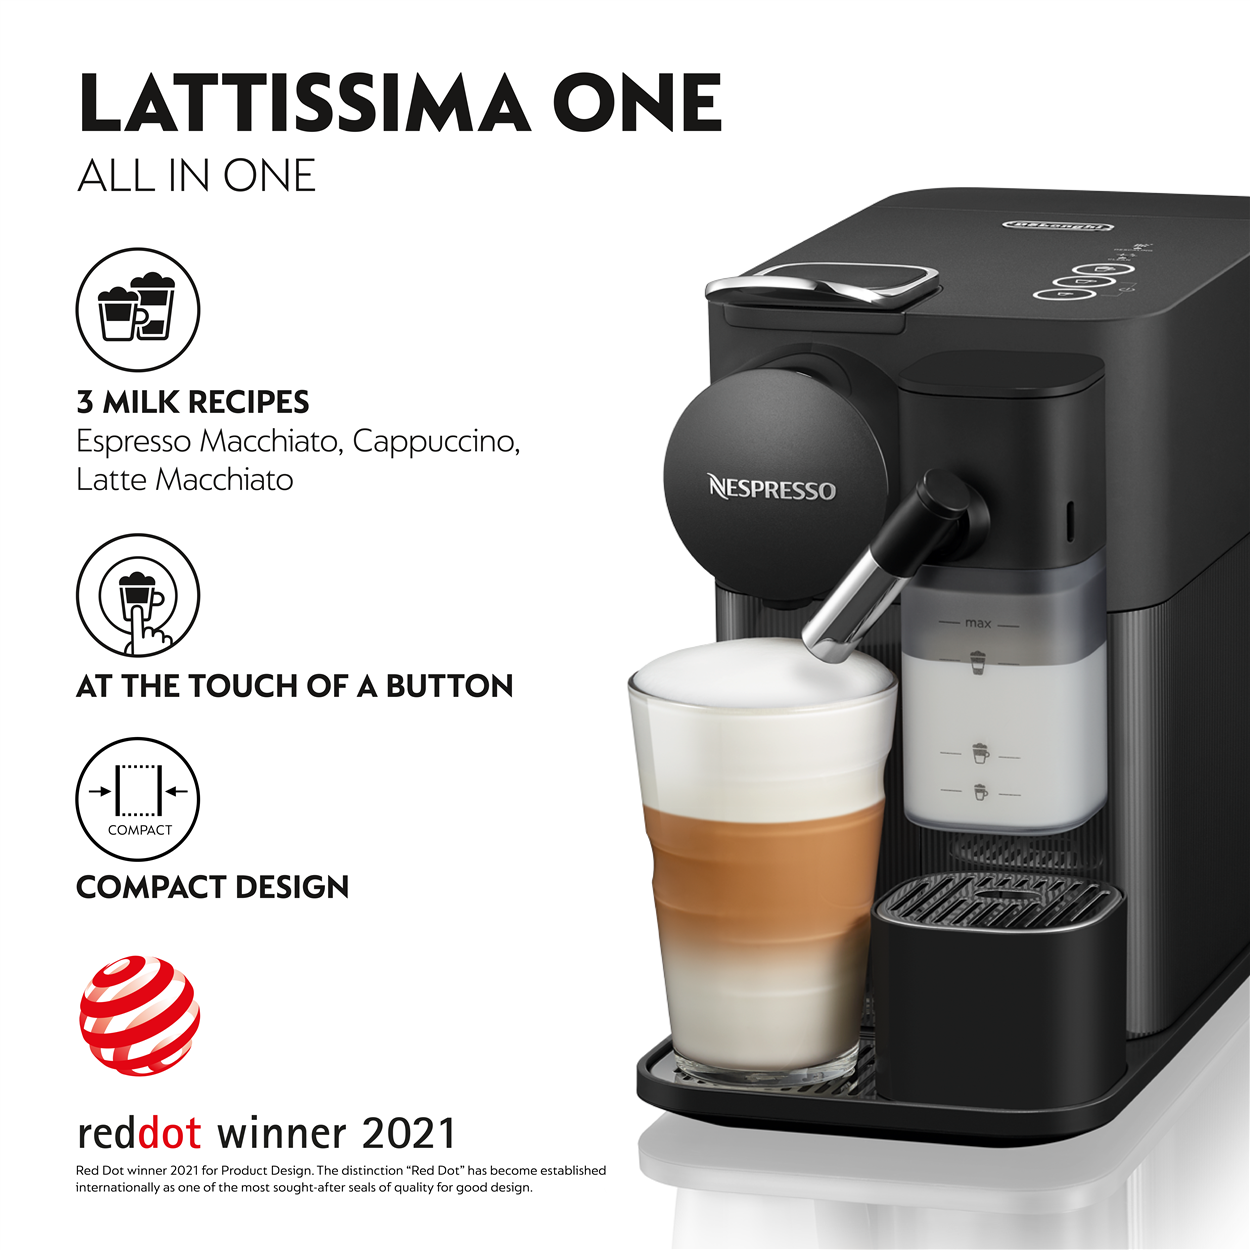 NESPRESSO F121 Lattissima One Coffee Machine Black